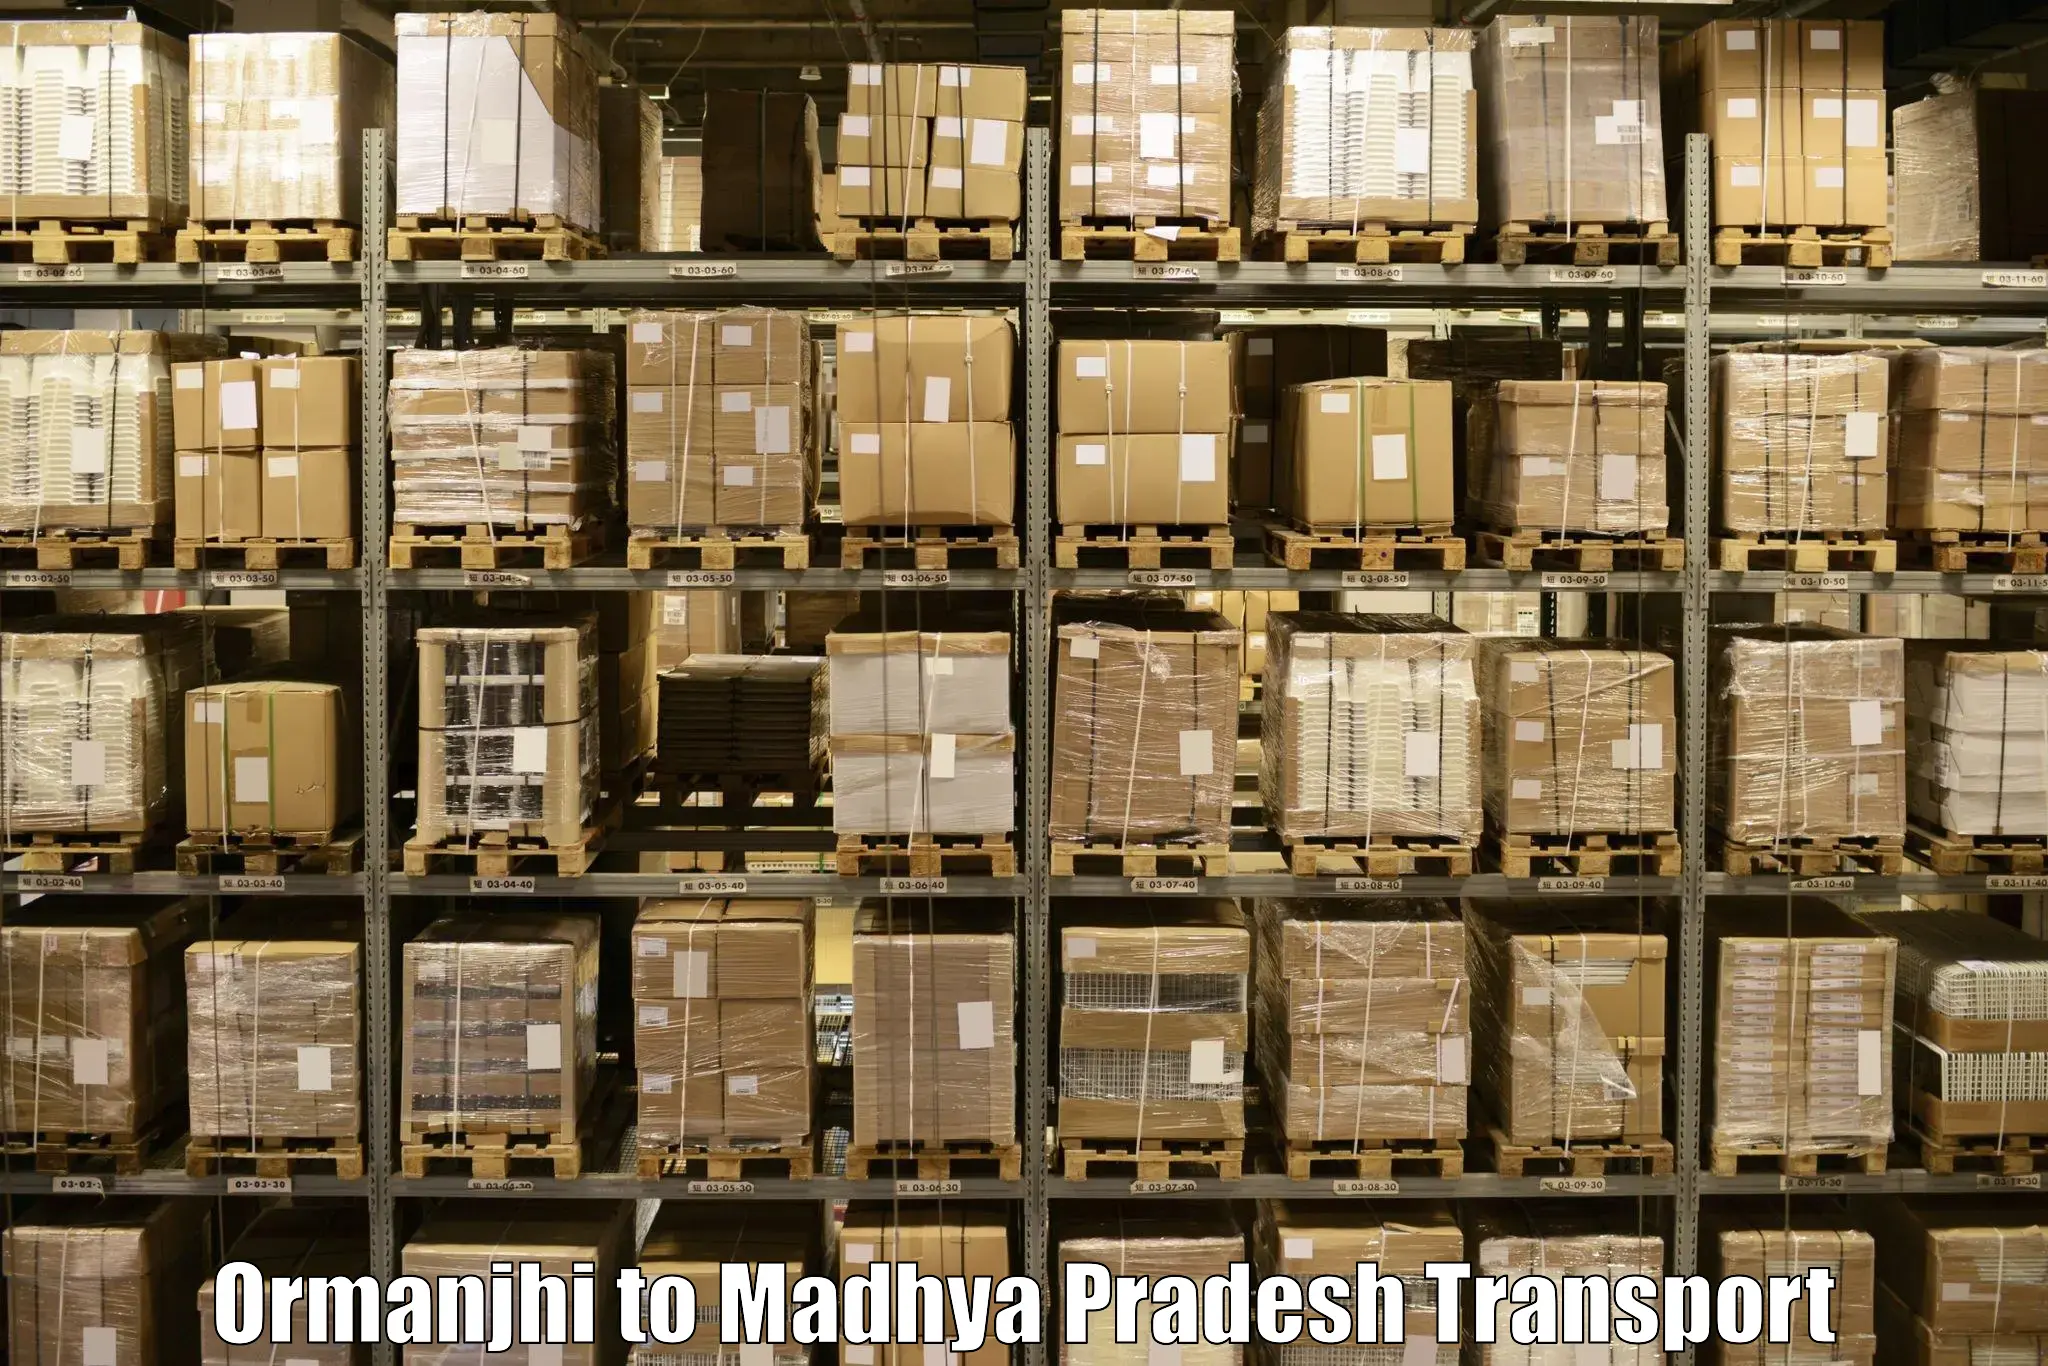 Shipping partner Ormanjhi to Ashoknagar